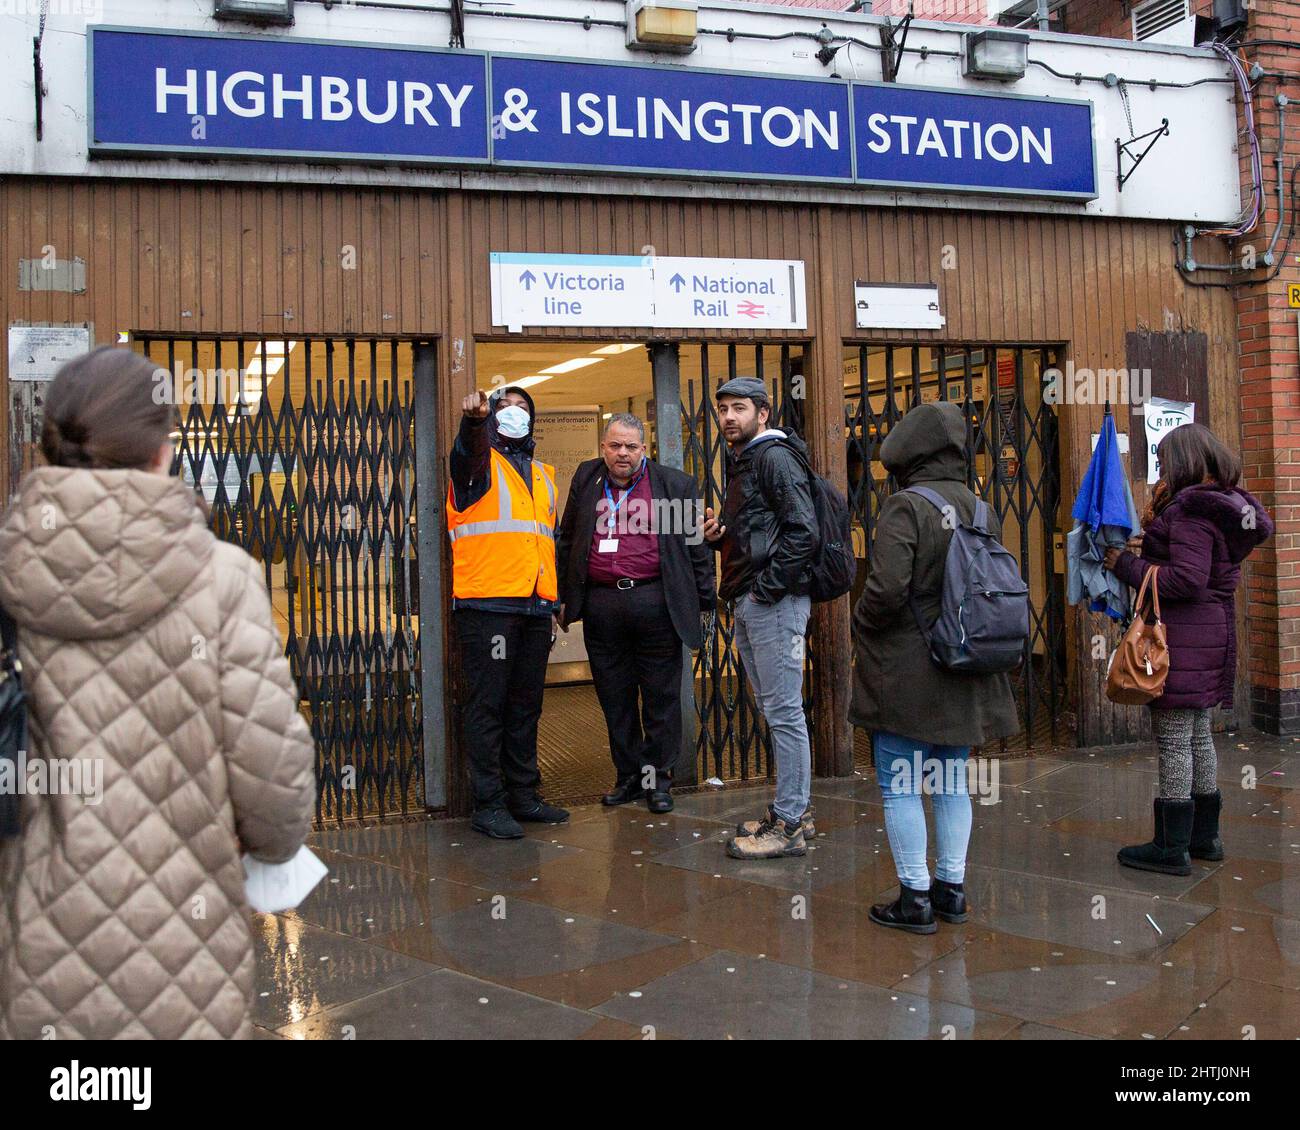 01/03/2022. Londra, Regno Unito. I pendolari sono visti arrivare ad una stazione chiusa della metropolitana di Highbury e Islington dato che il personale fornisce consigli su altri mezzi di viaggio. AS Foto Stock